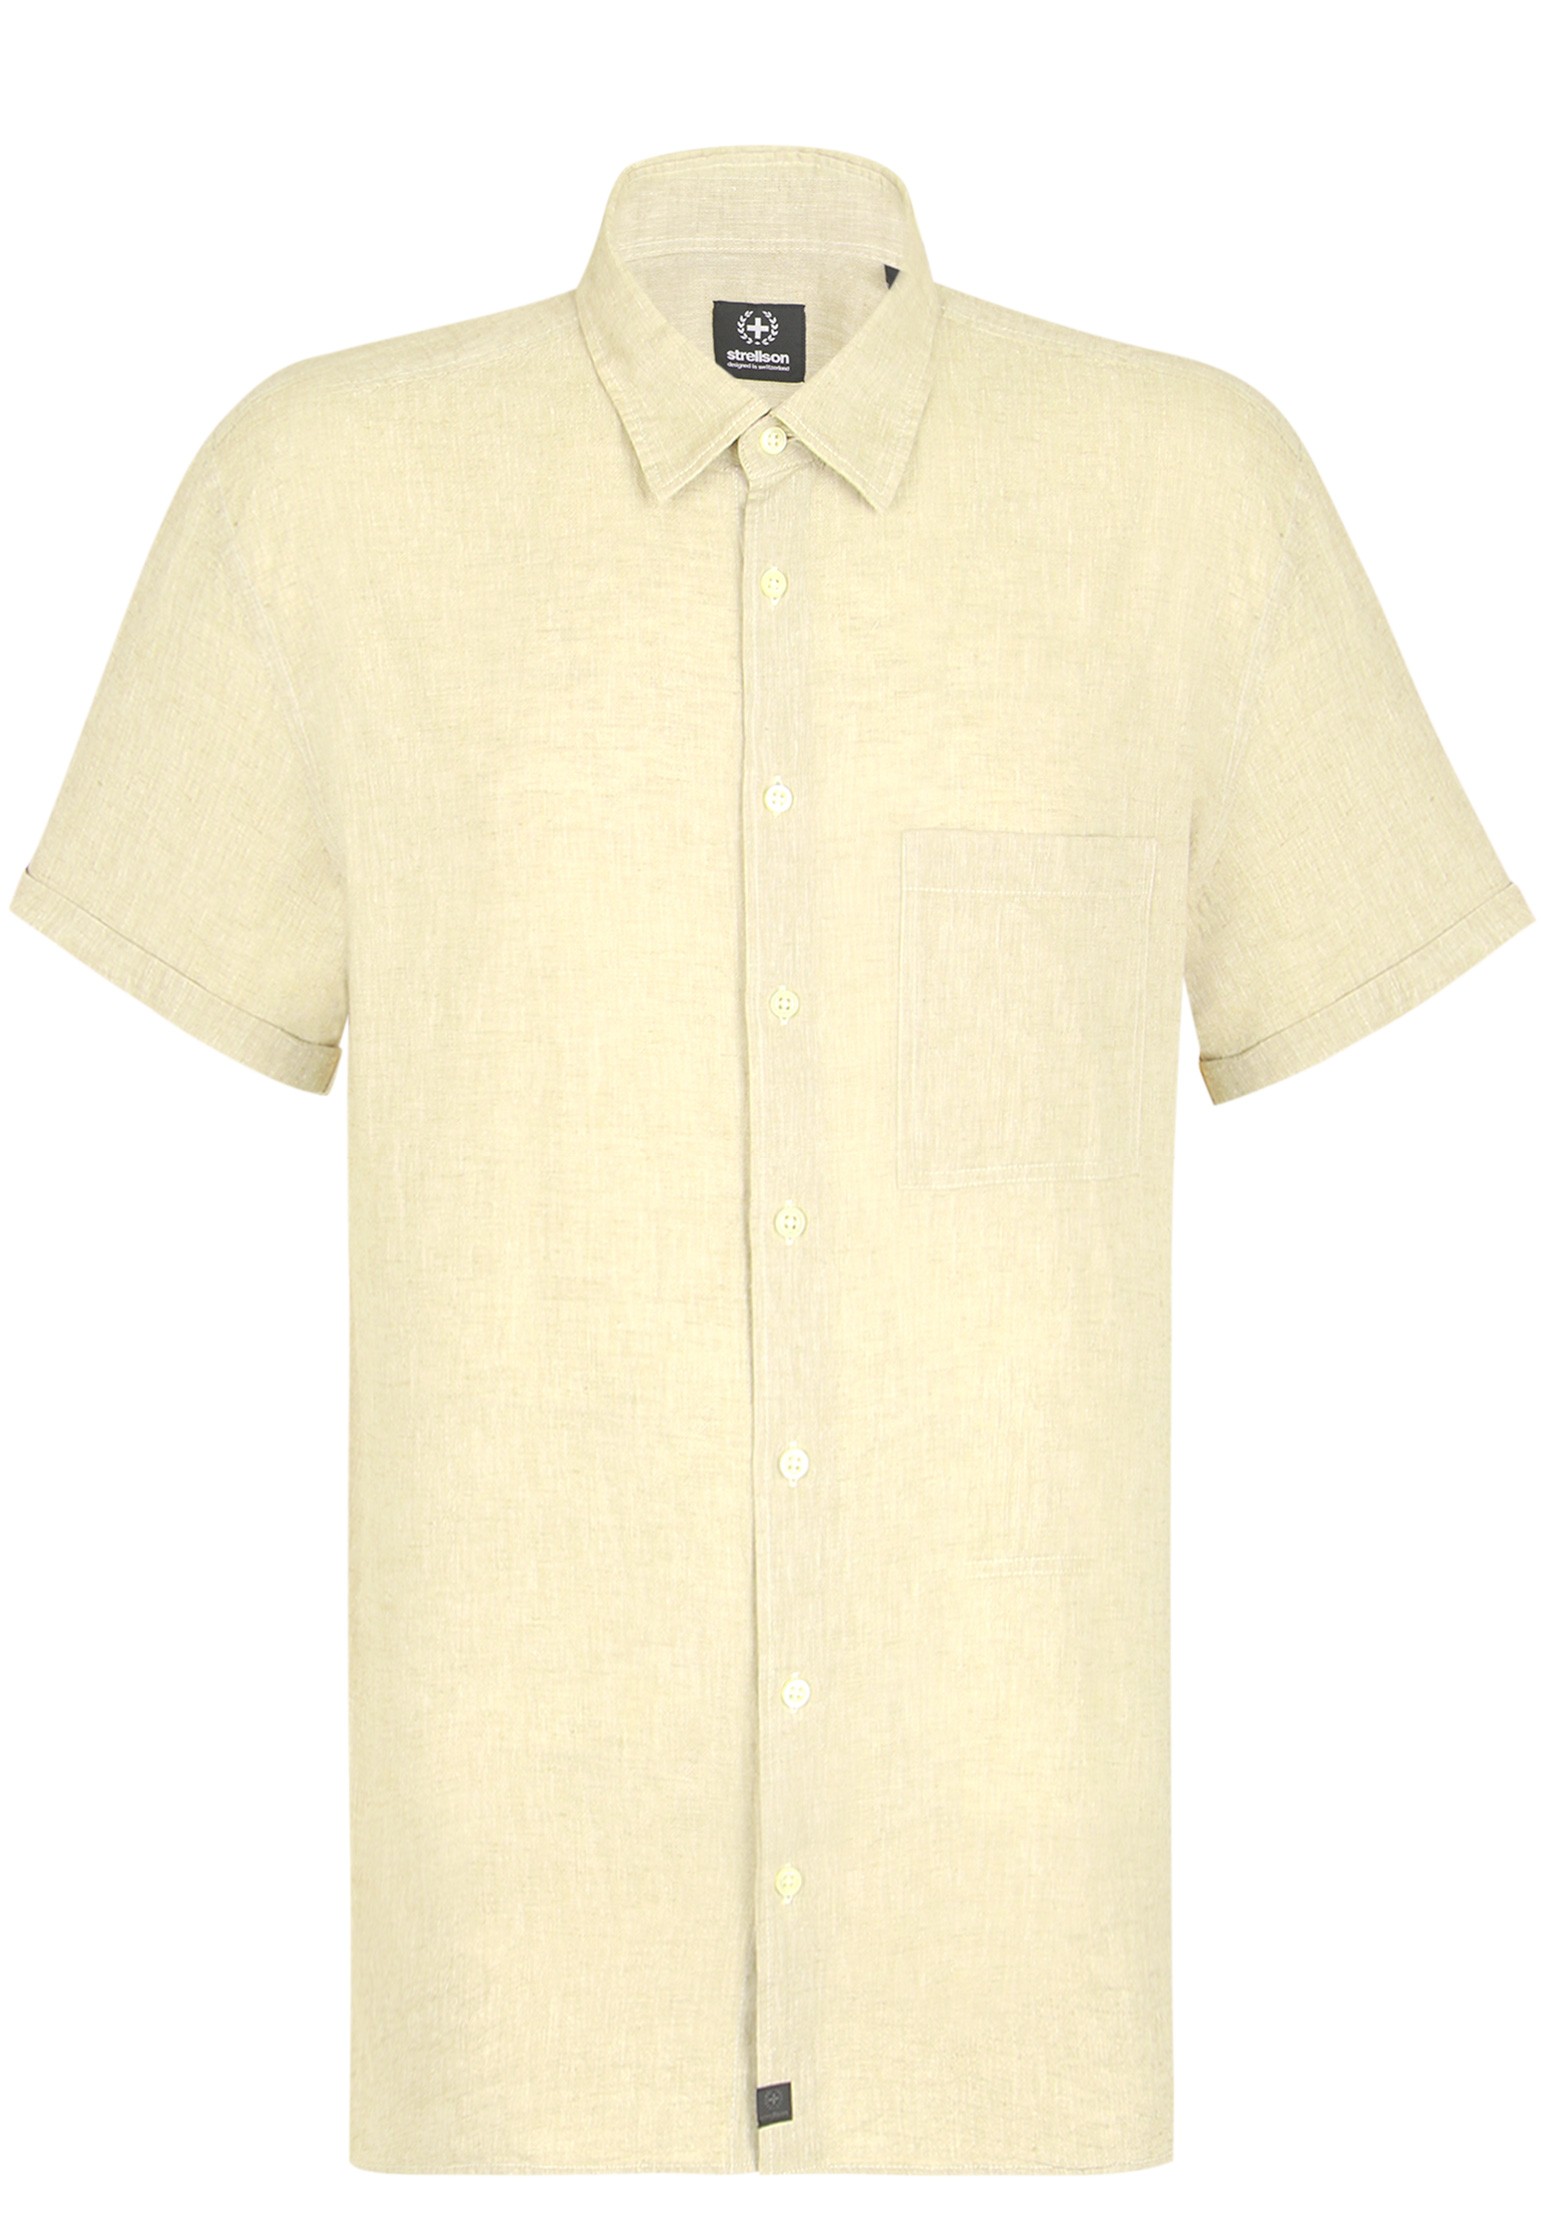 Рубашка мужская Strellson 127406 желтая XS